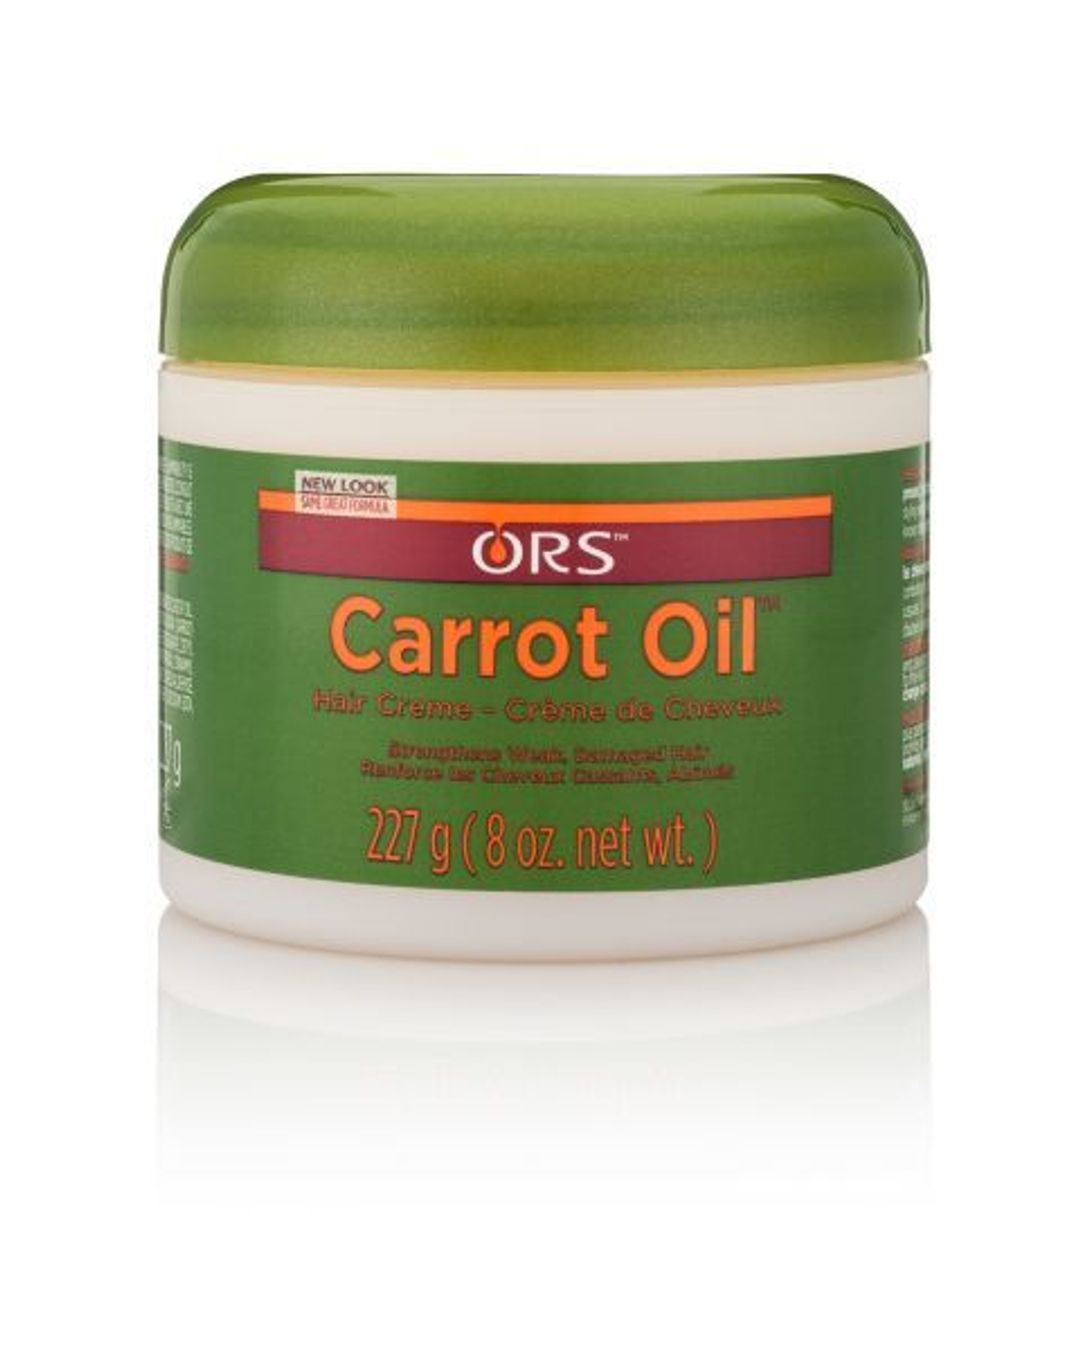 ORS Hairestore Carrot Oil - 6oz